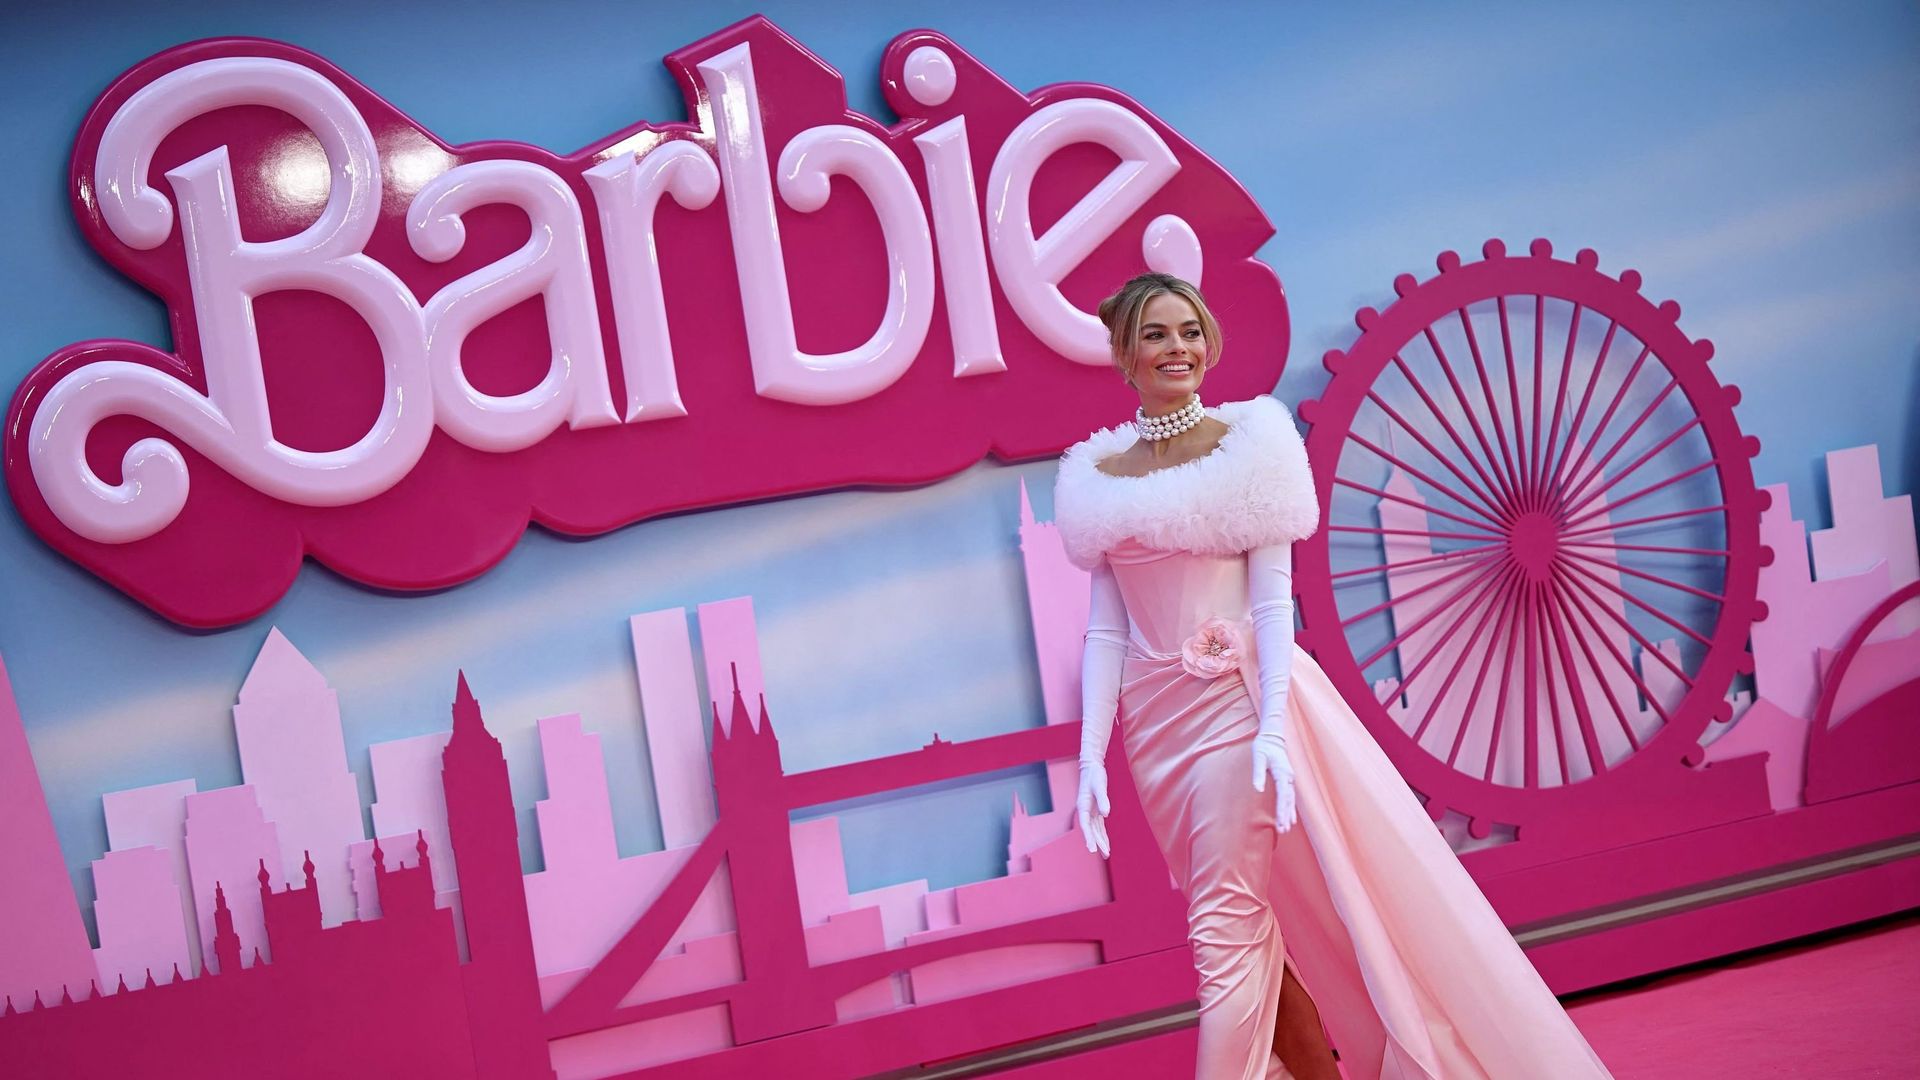 Margot Robbie et Ryan Gosling font du roller en tenues fluo sur le tournage  de Barbie 